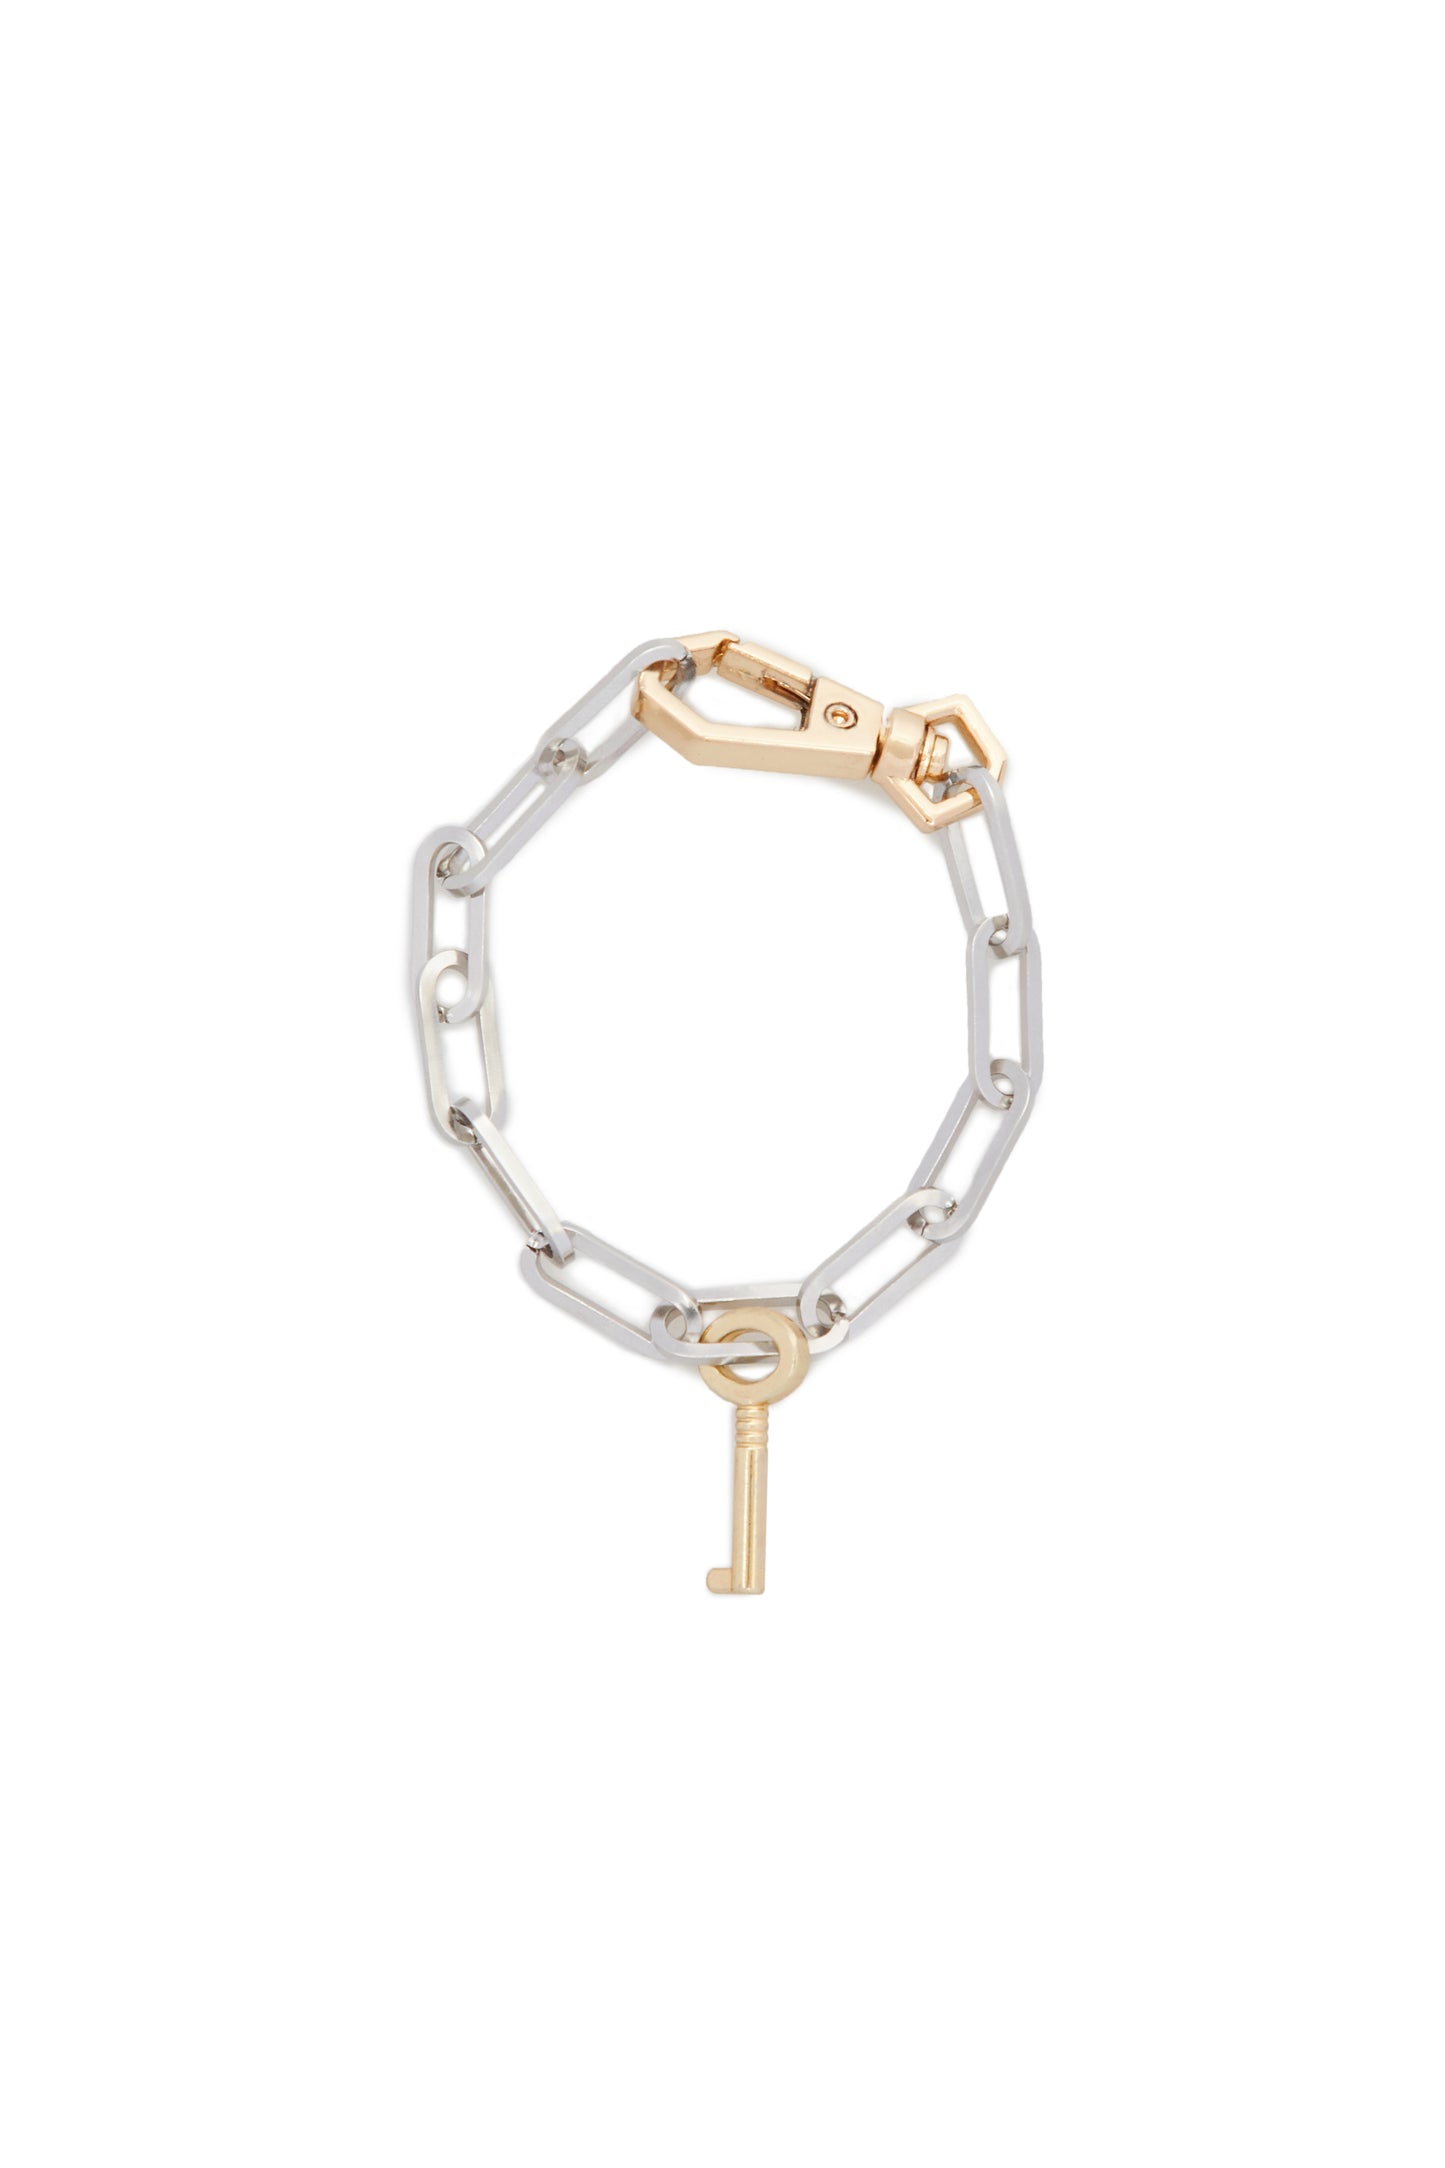 Bracelet with Key